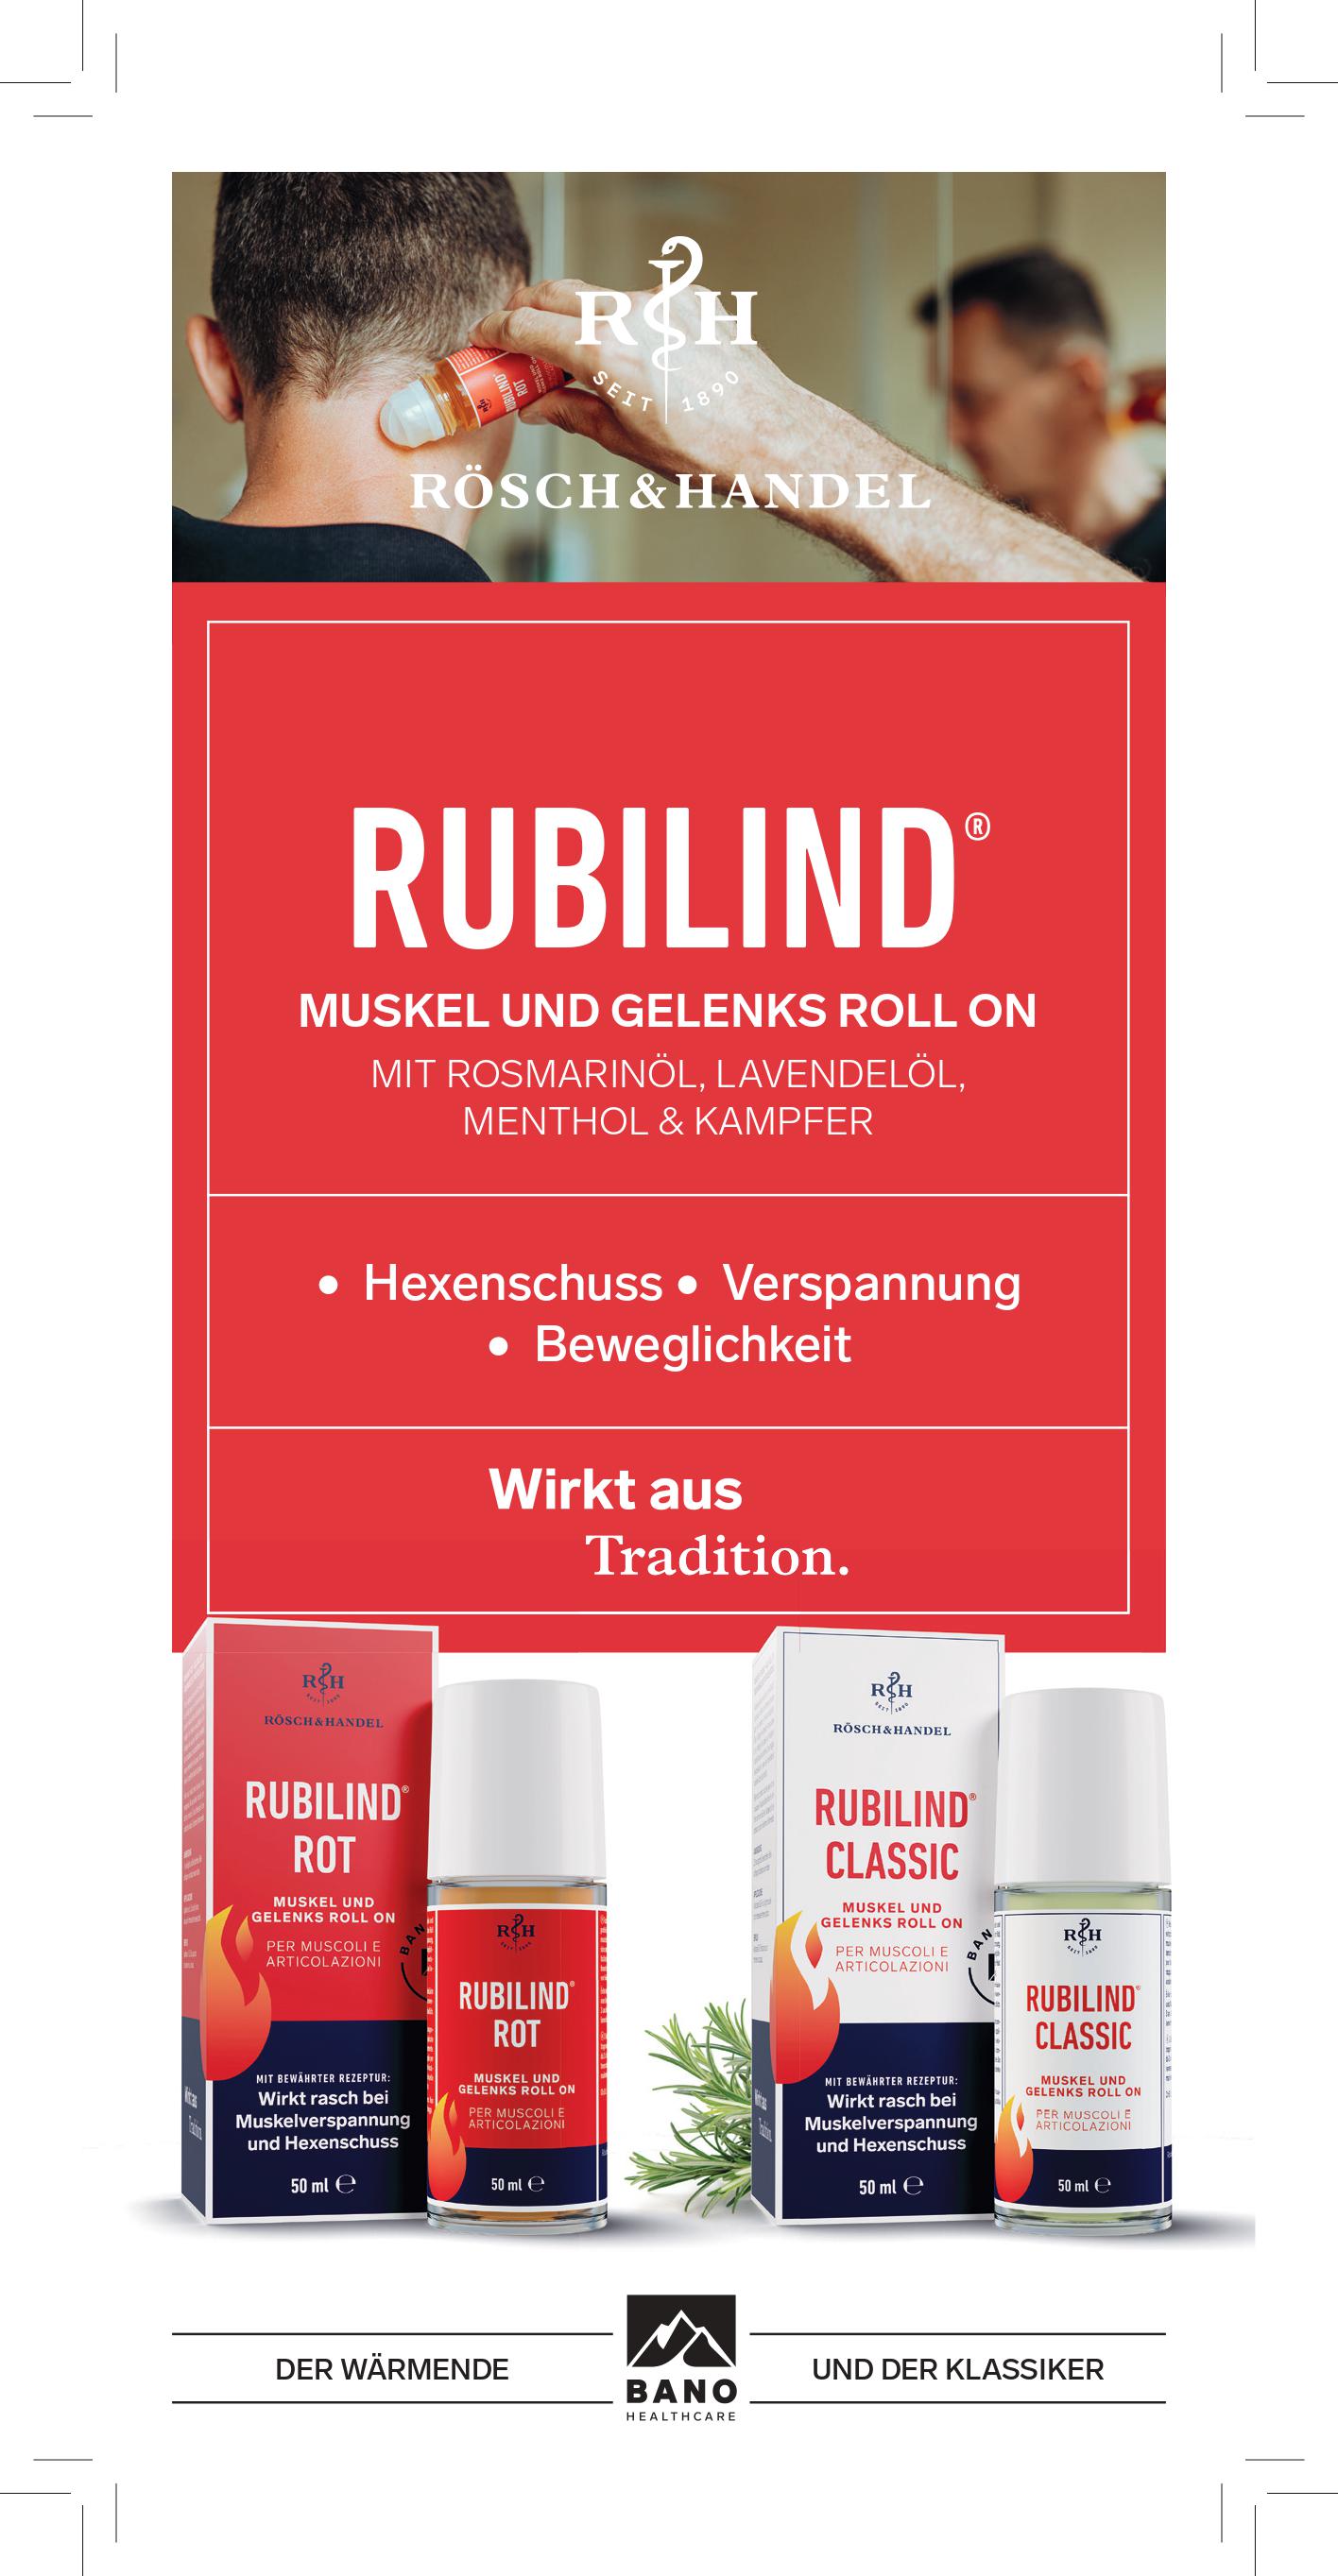 Rubilind Rot roll on per muscoli e articolazioni